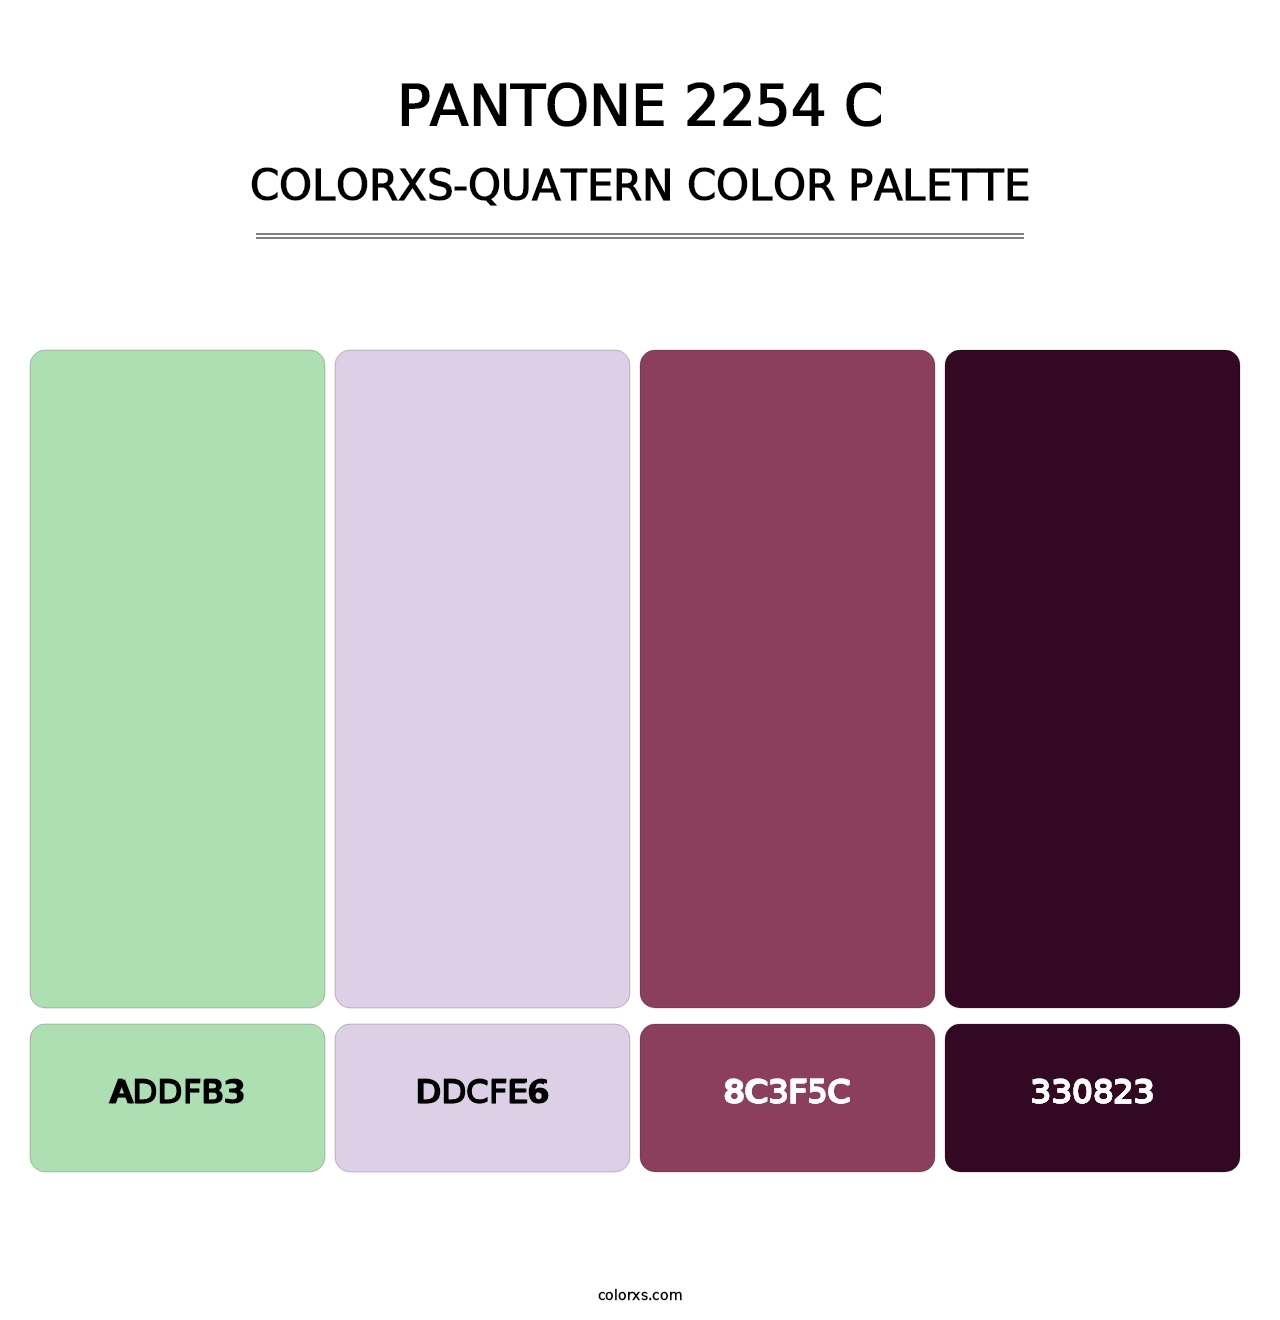 PANTONE 2254 C - Colorxs Quatern Palette